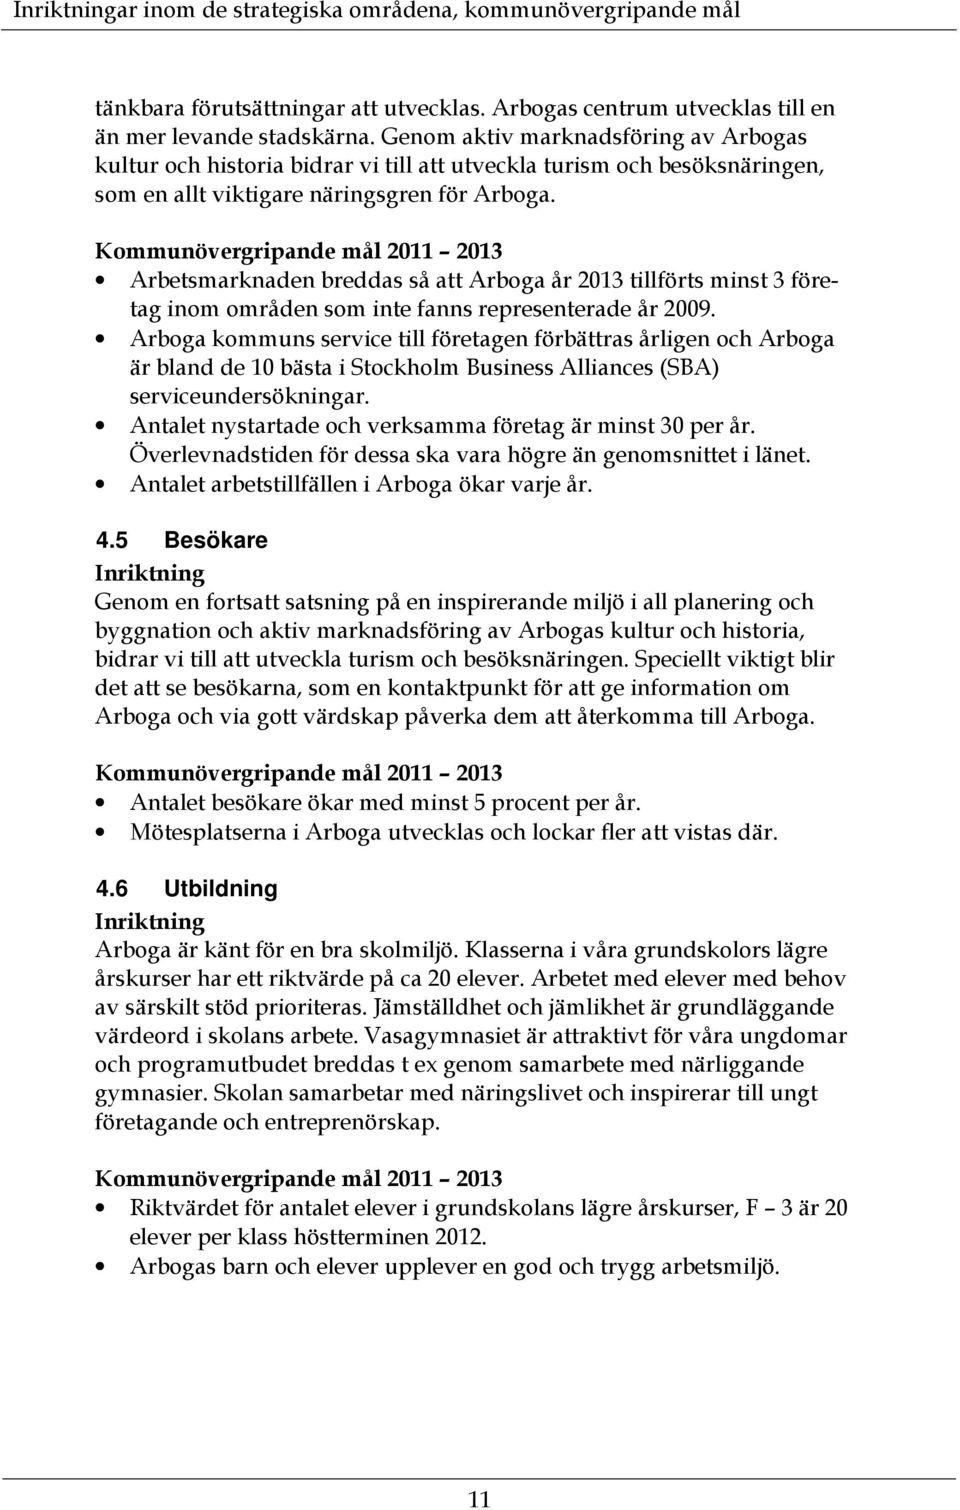 Kommunövergripande mål 2011 2013 Arbetsmarknaden breddas så att Arboga år 2013 tillförts minst 3 företag inom områden som inte fanns representerade år 2009.